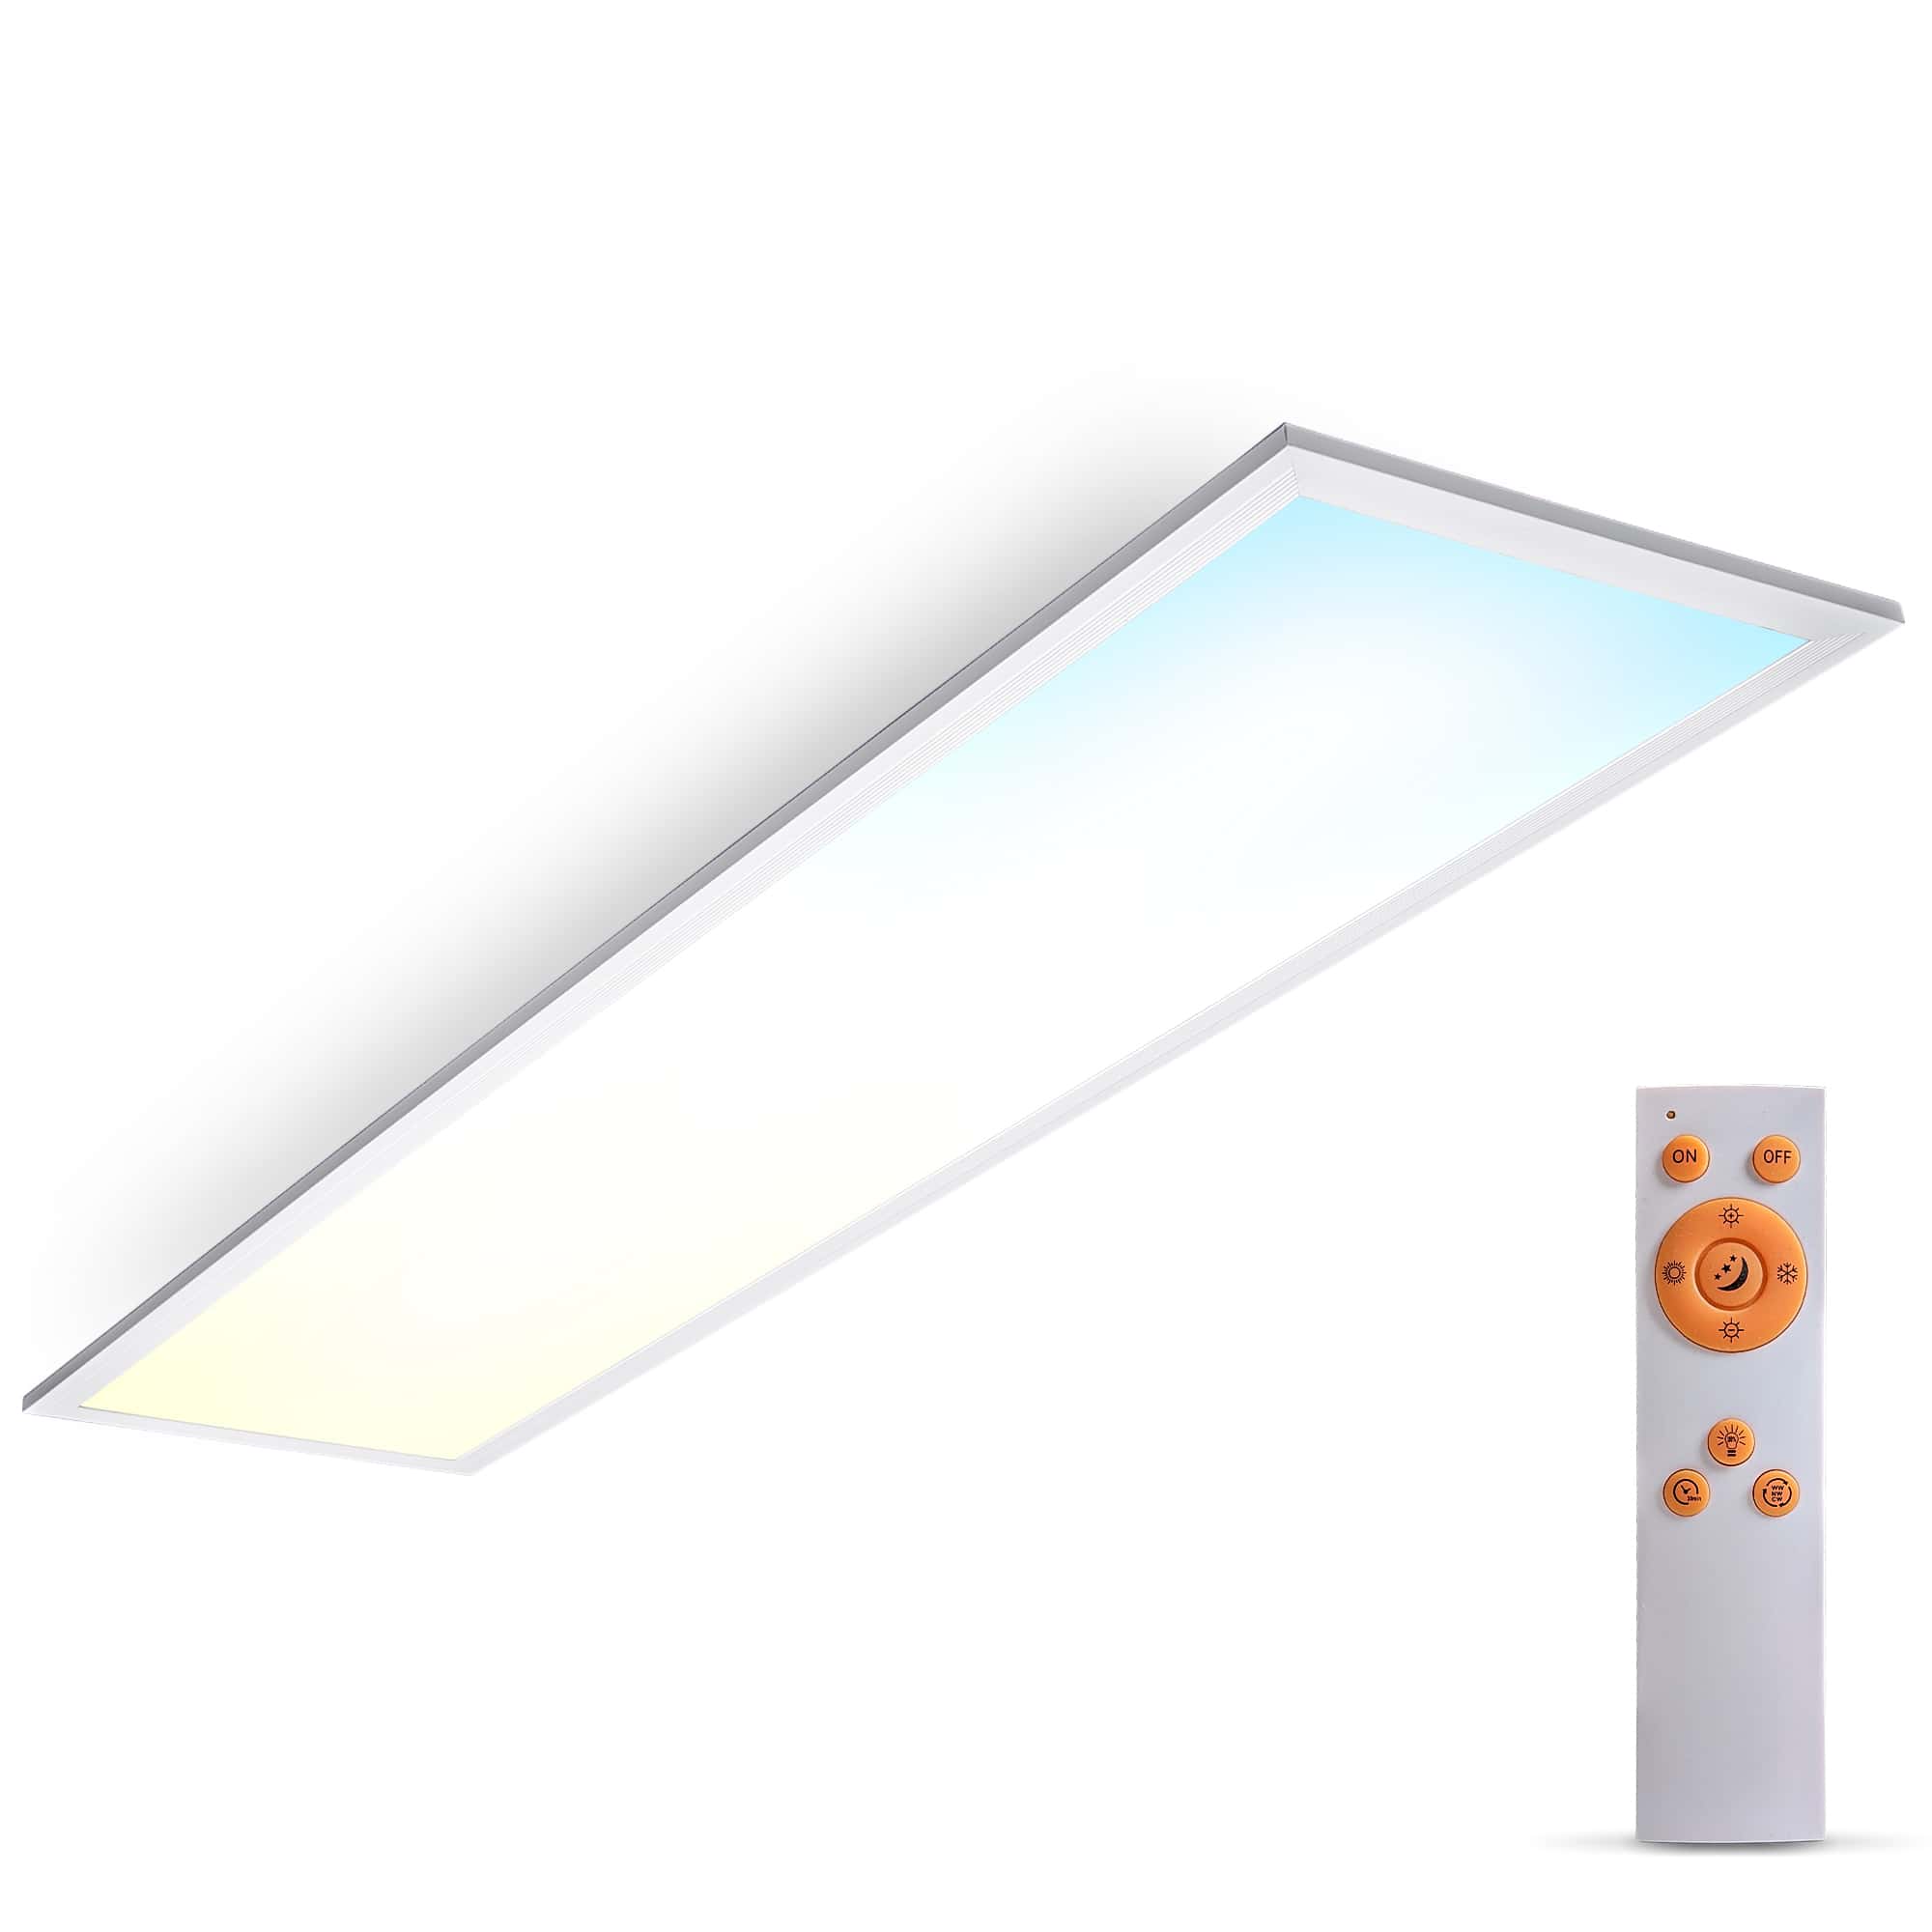 LED Panel Decke dimmbar - 100x25cm - Deckenleuchte ultra-flach 24W 2200lm CCT 3000-6500K Deckenlampe mit Fernbedienung Timer Memory & Nachtlicht | weiß - 1